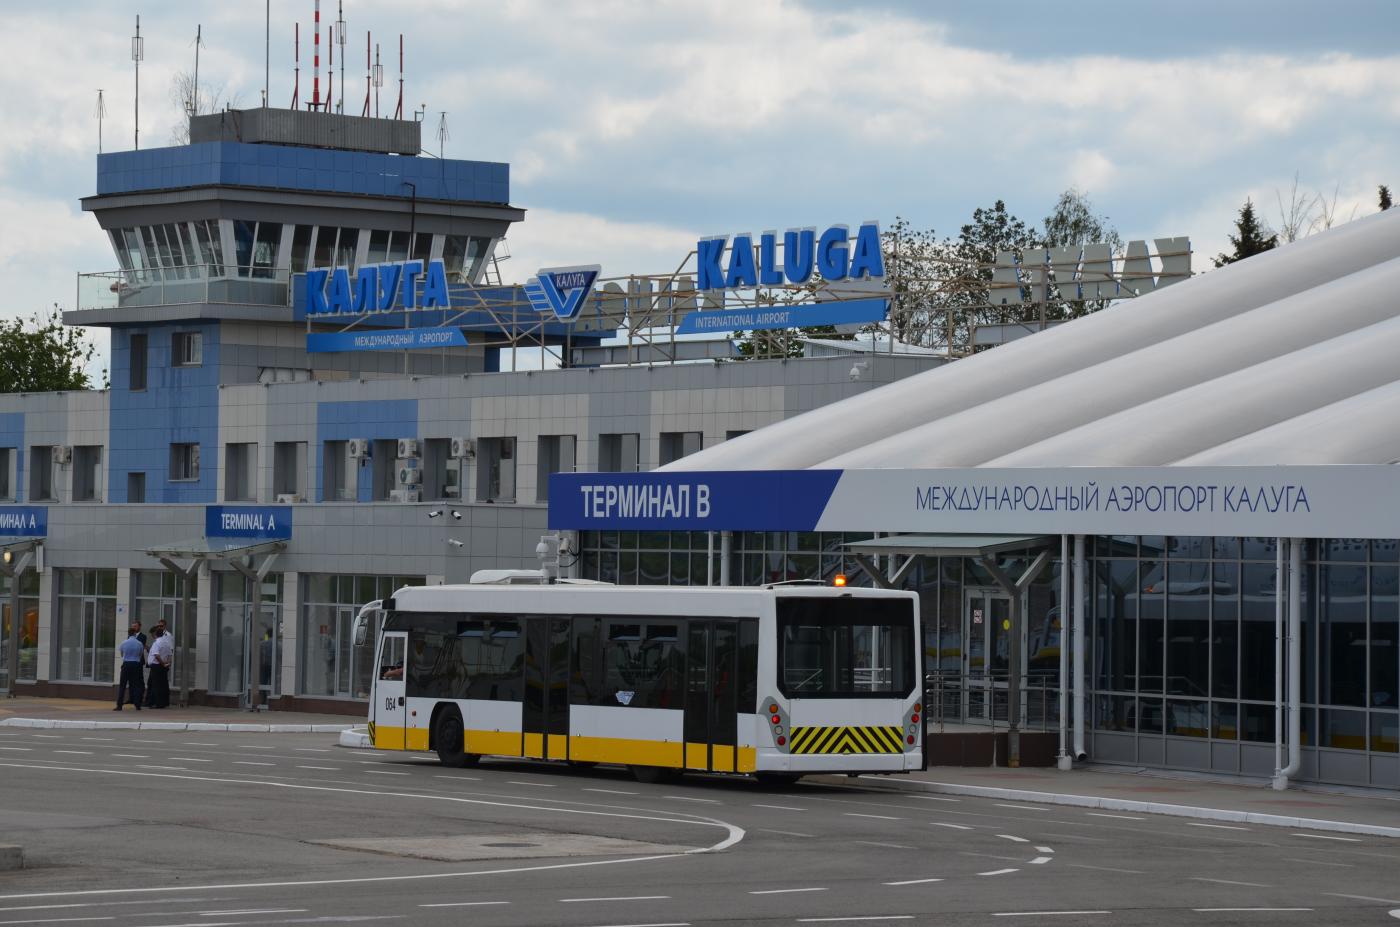 Кыргызстан думает запустить рейсы в Калугу — это могут быть каботажные перевозки